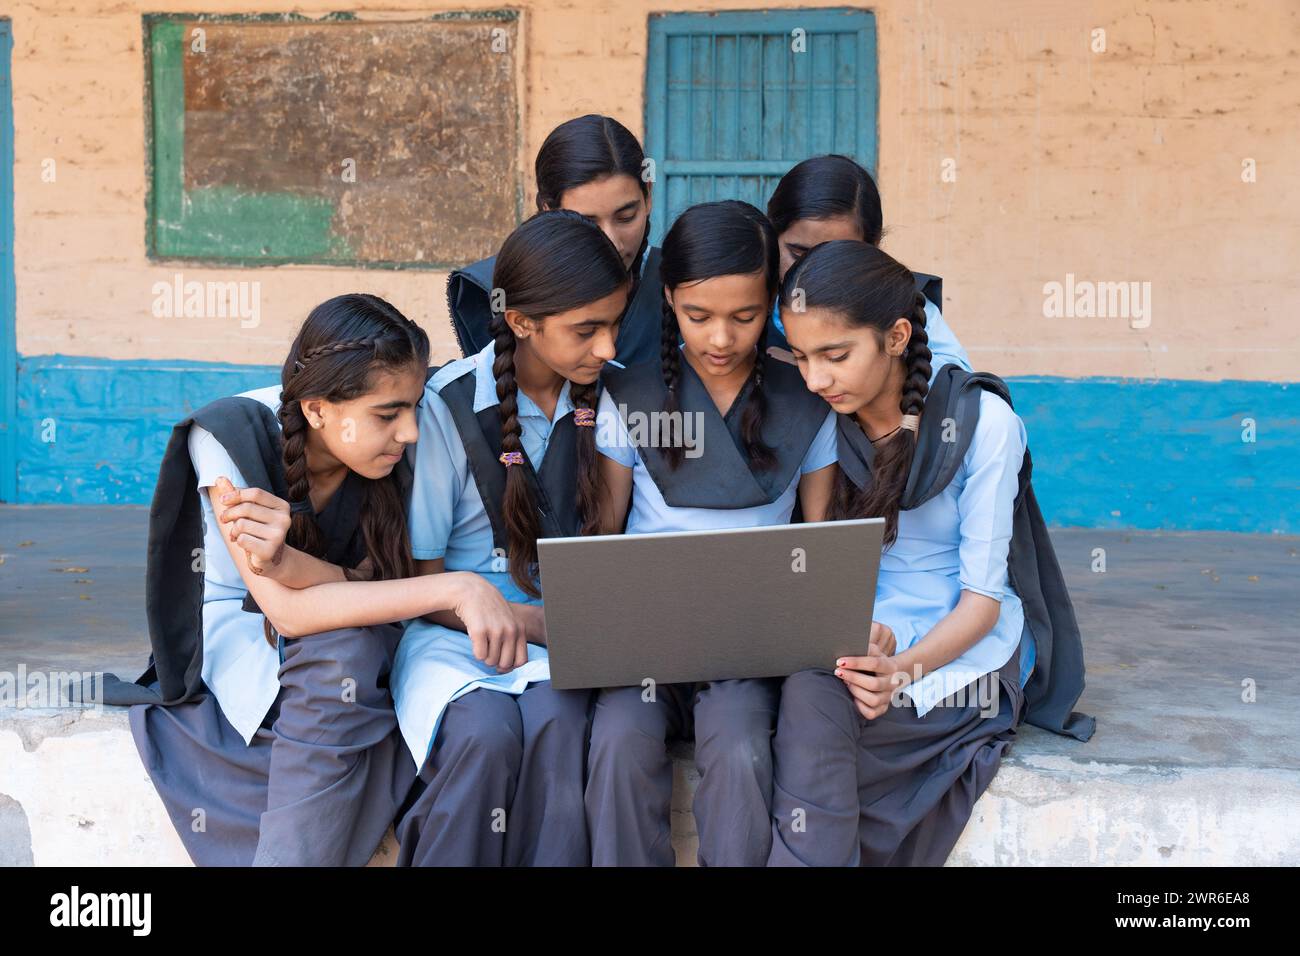 Gruppe ländlicher Schulmädchen in Uniform, die im Schulkorridor sitzen und am Laptop arbeiten - Konzept der digitalen Bildung Stockfoto